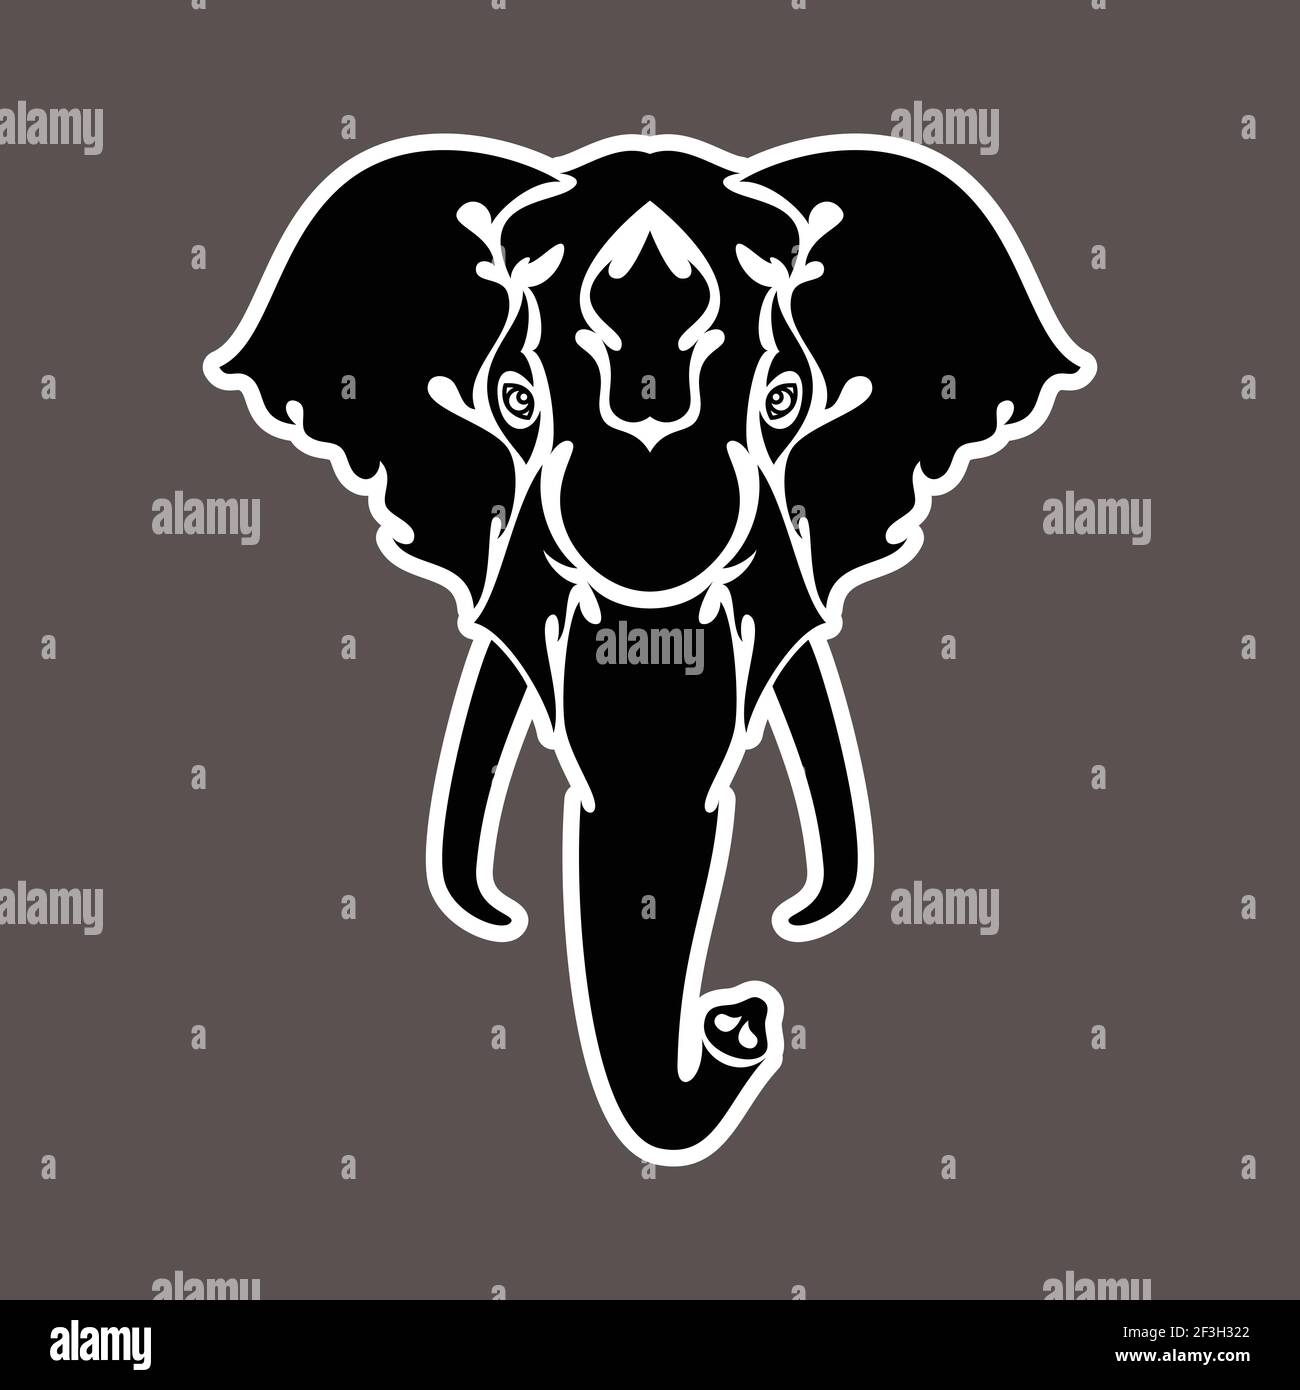 Ritratto astratto disegnato a mano di un elefante. Adesivo. Illustrazione stilizzata vettoriale isolata su sfondo scuro. Illustrazione Vettoriale